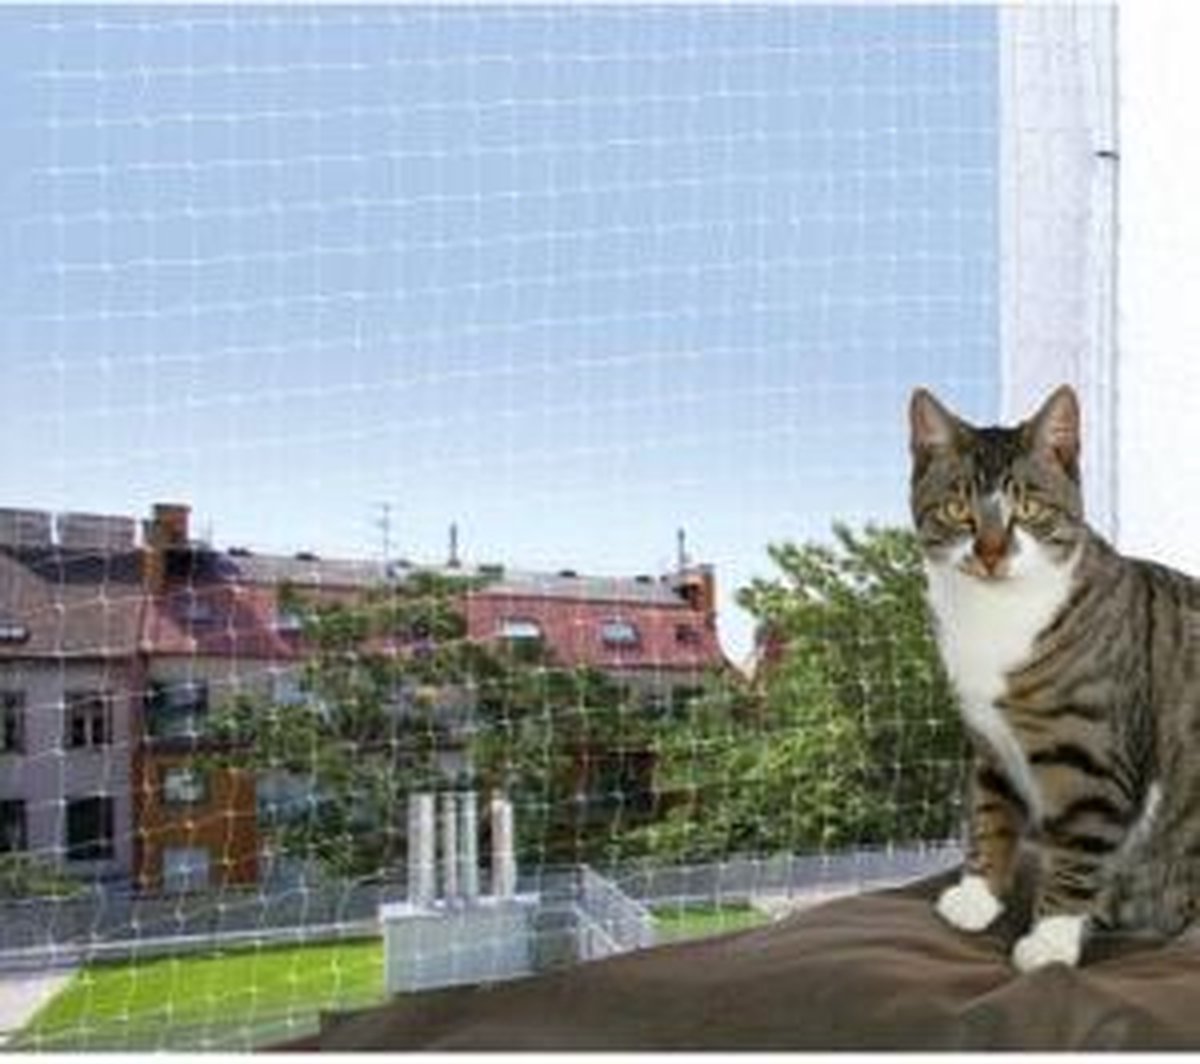 Trixie Net voor Balkon - Transparant - 6 x 3 m - Trixie